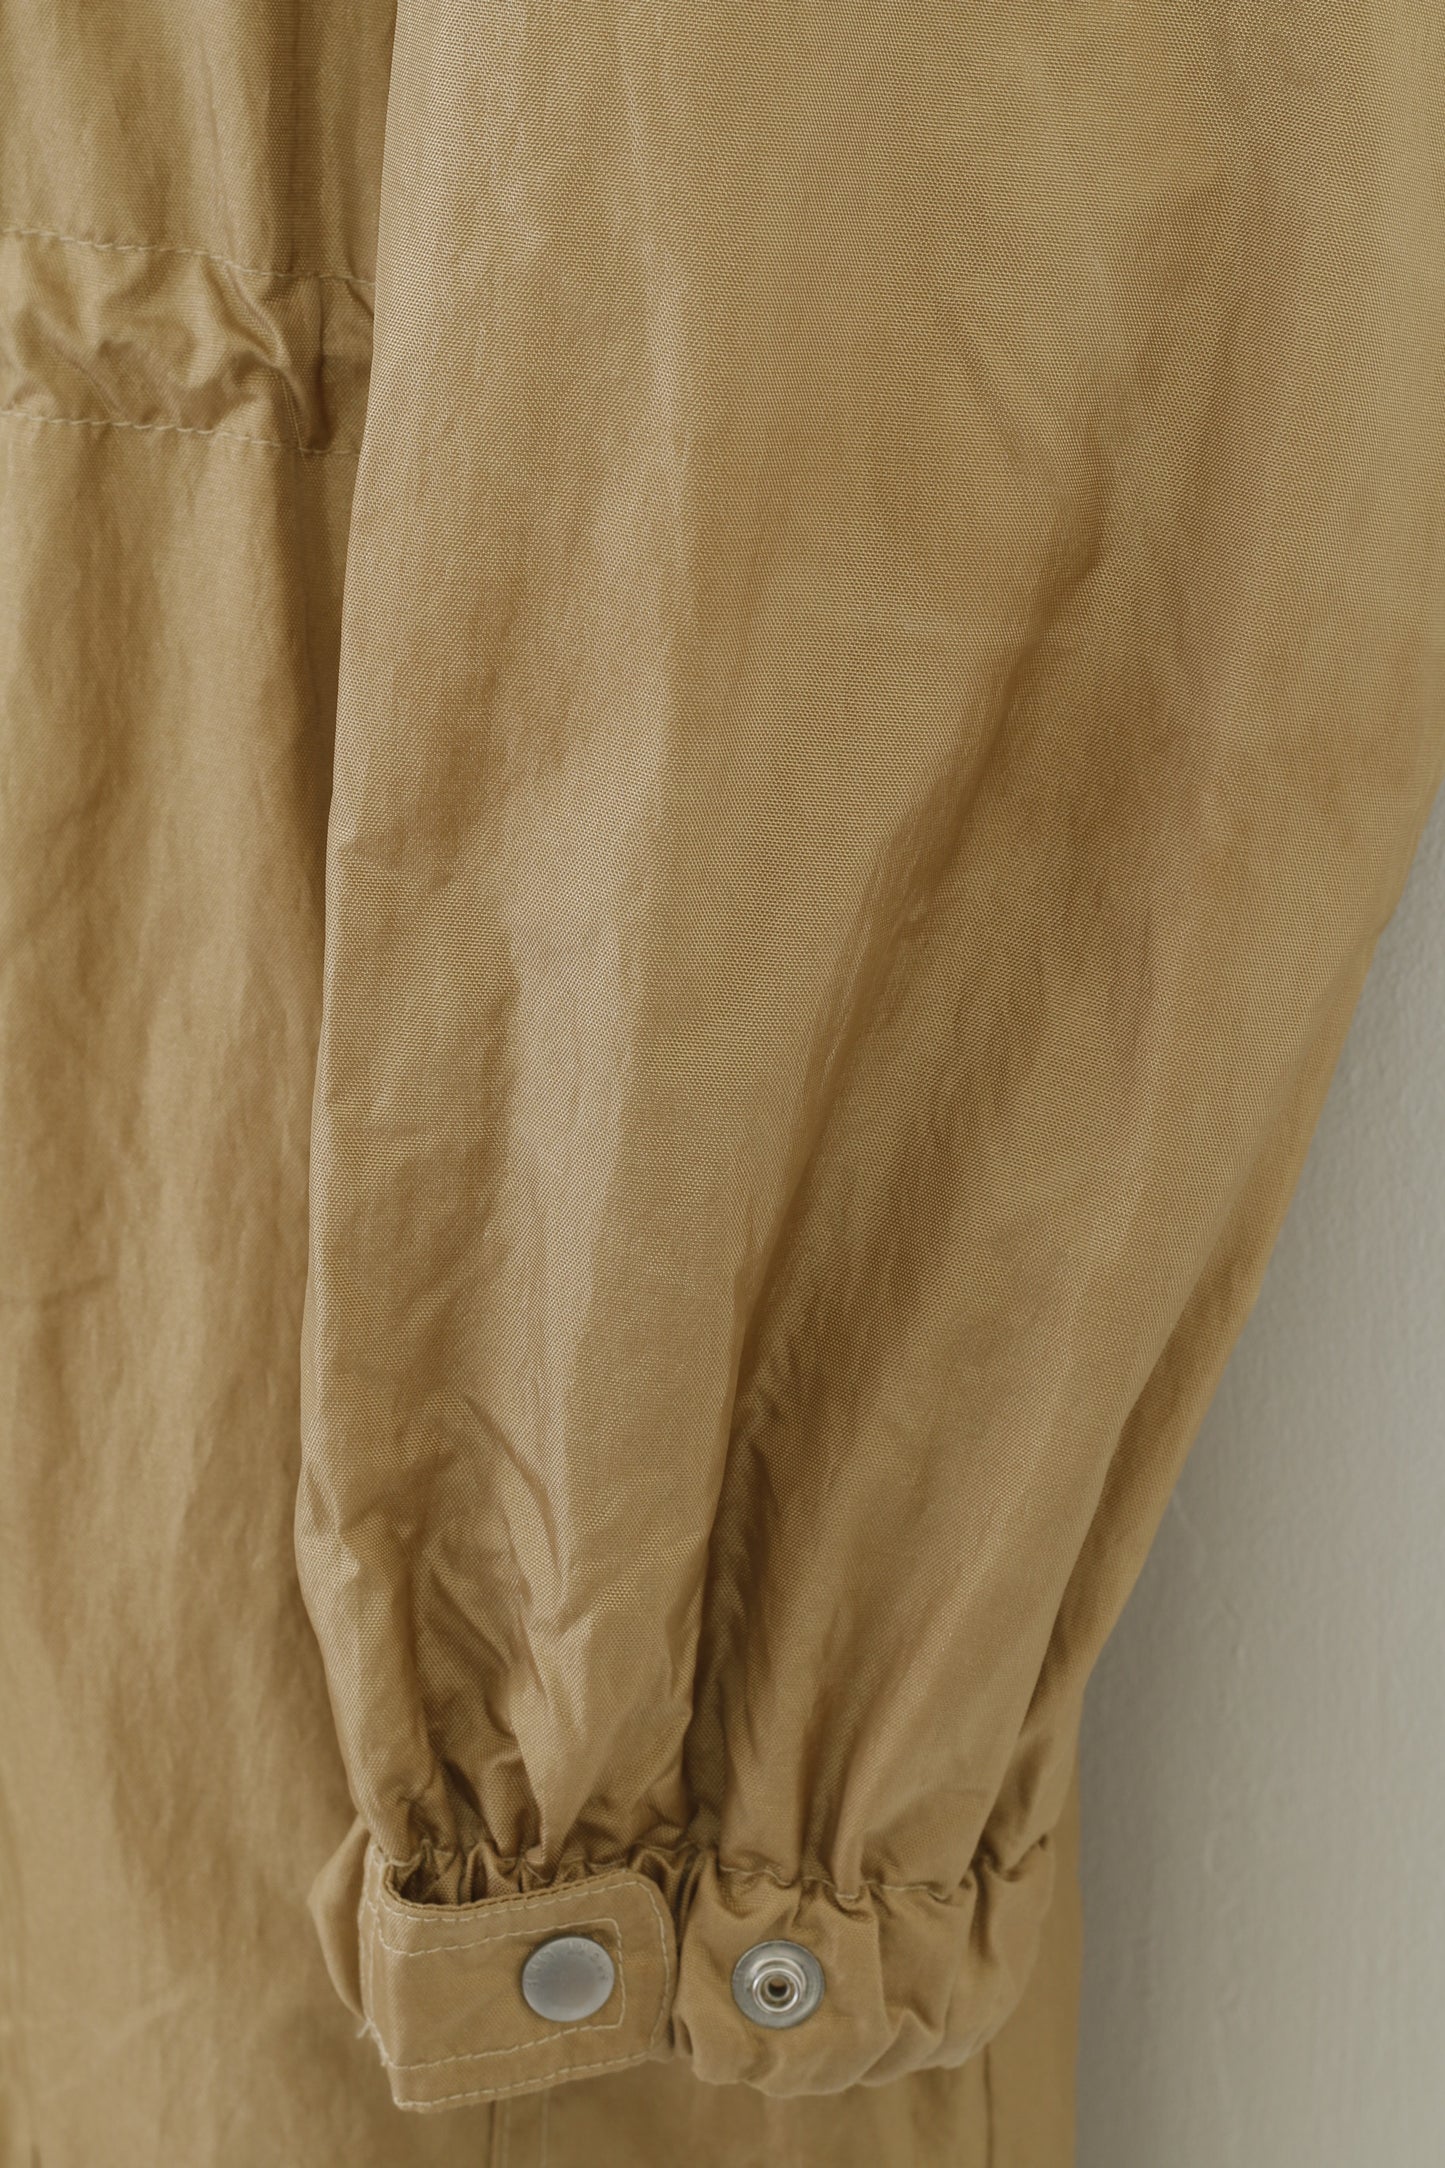 Vendo giacca da donna 10 M Parka in nylon con cerniera intera dorata impermeabile con cappuccio Gore-Tex giacca lunga da esterno vintage 